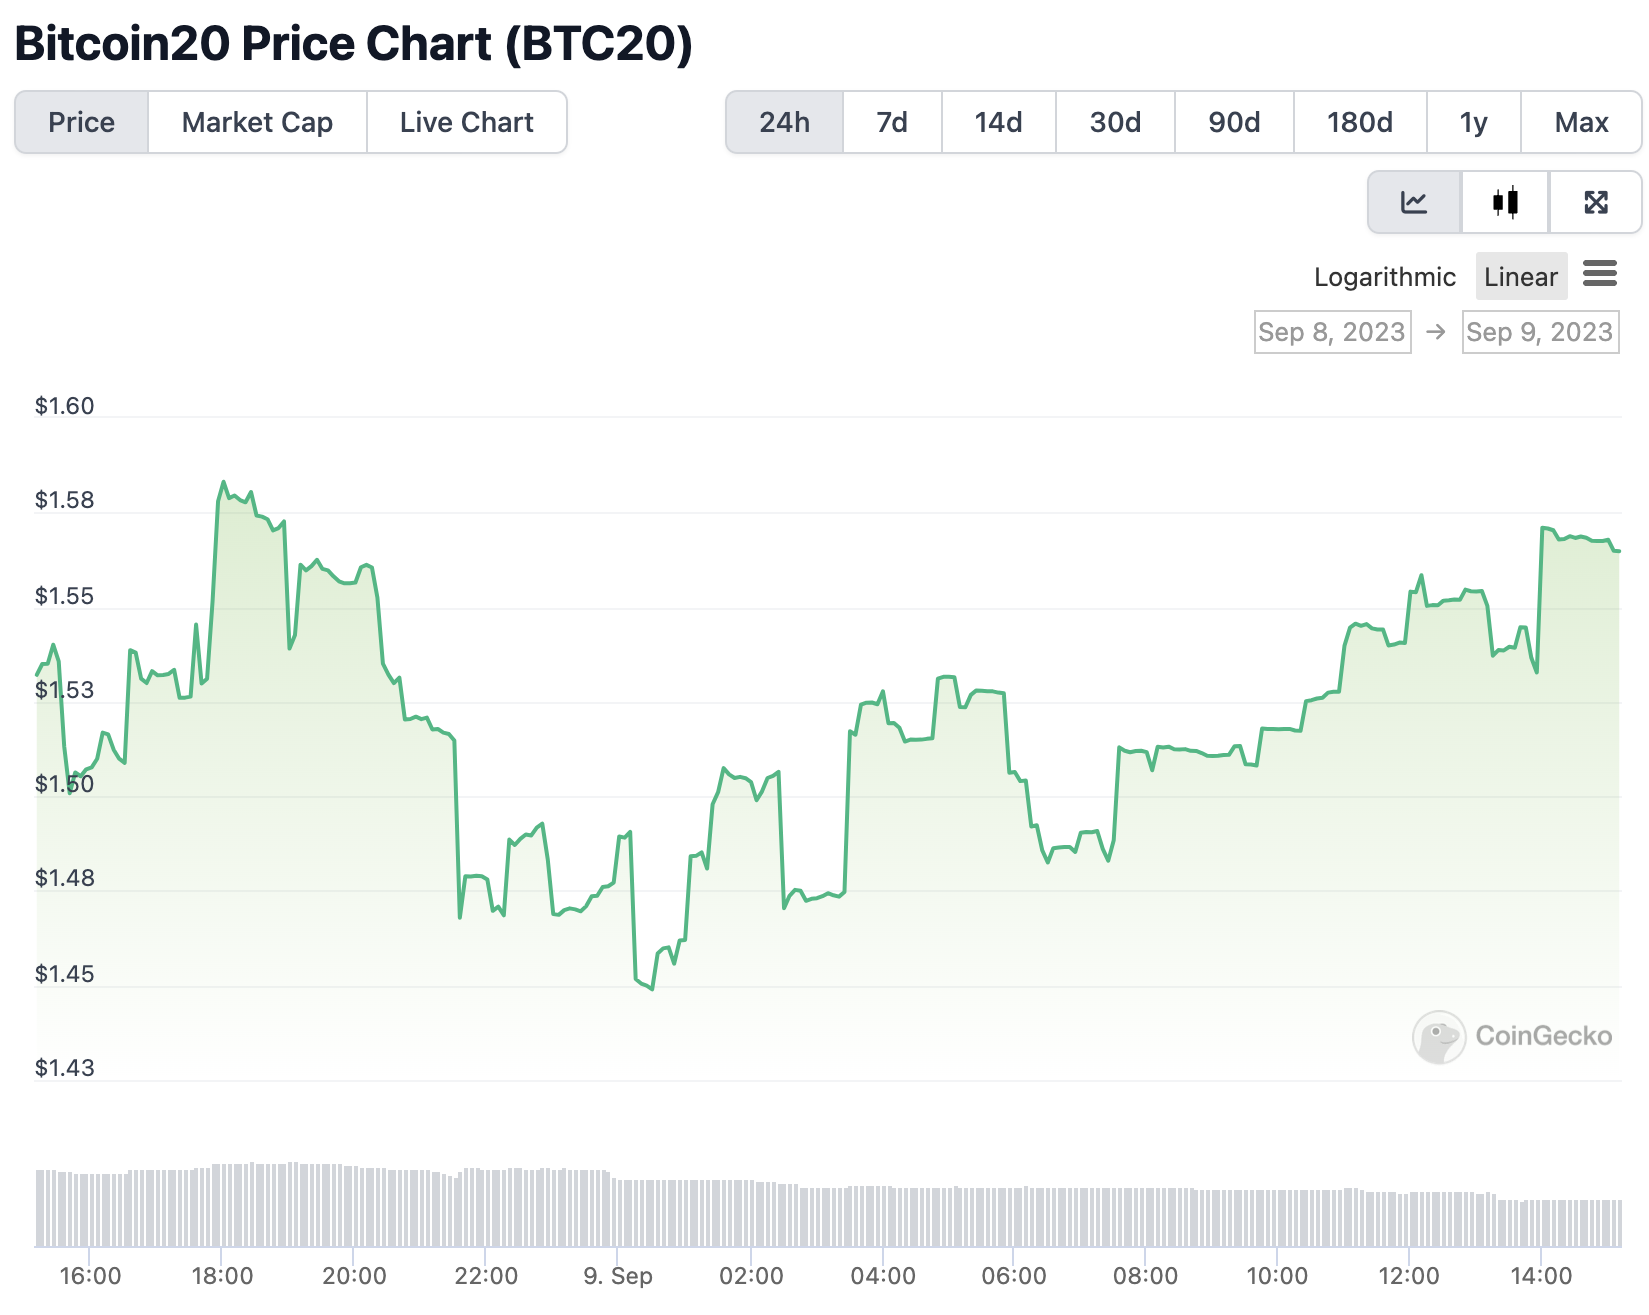 Bitcoin 20 price chart